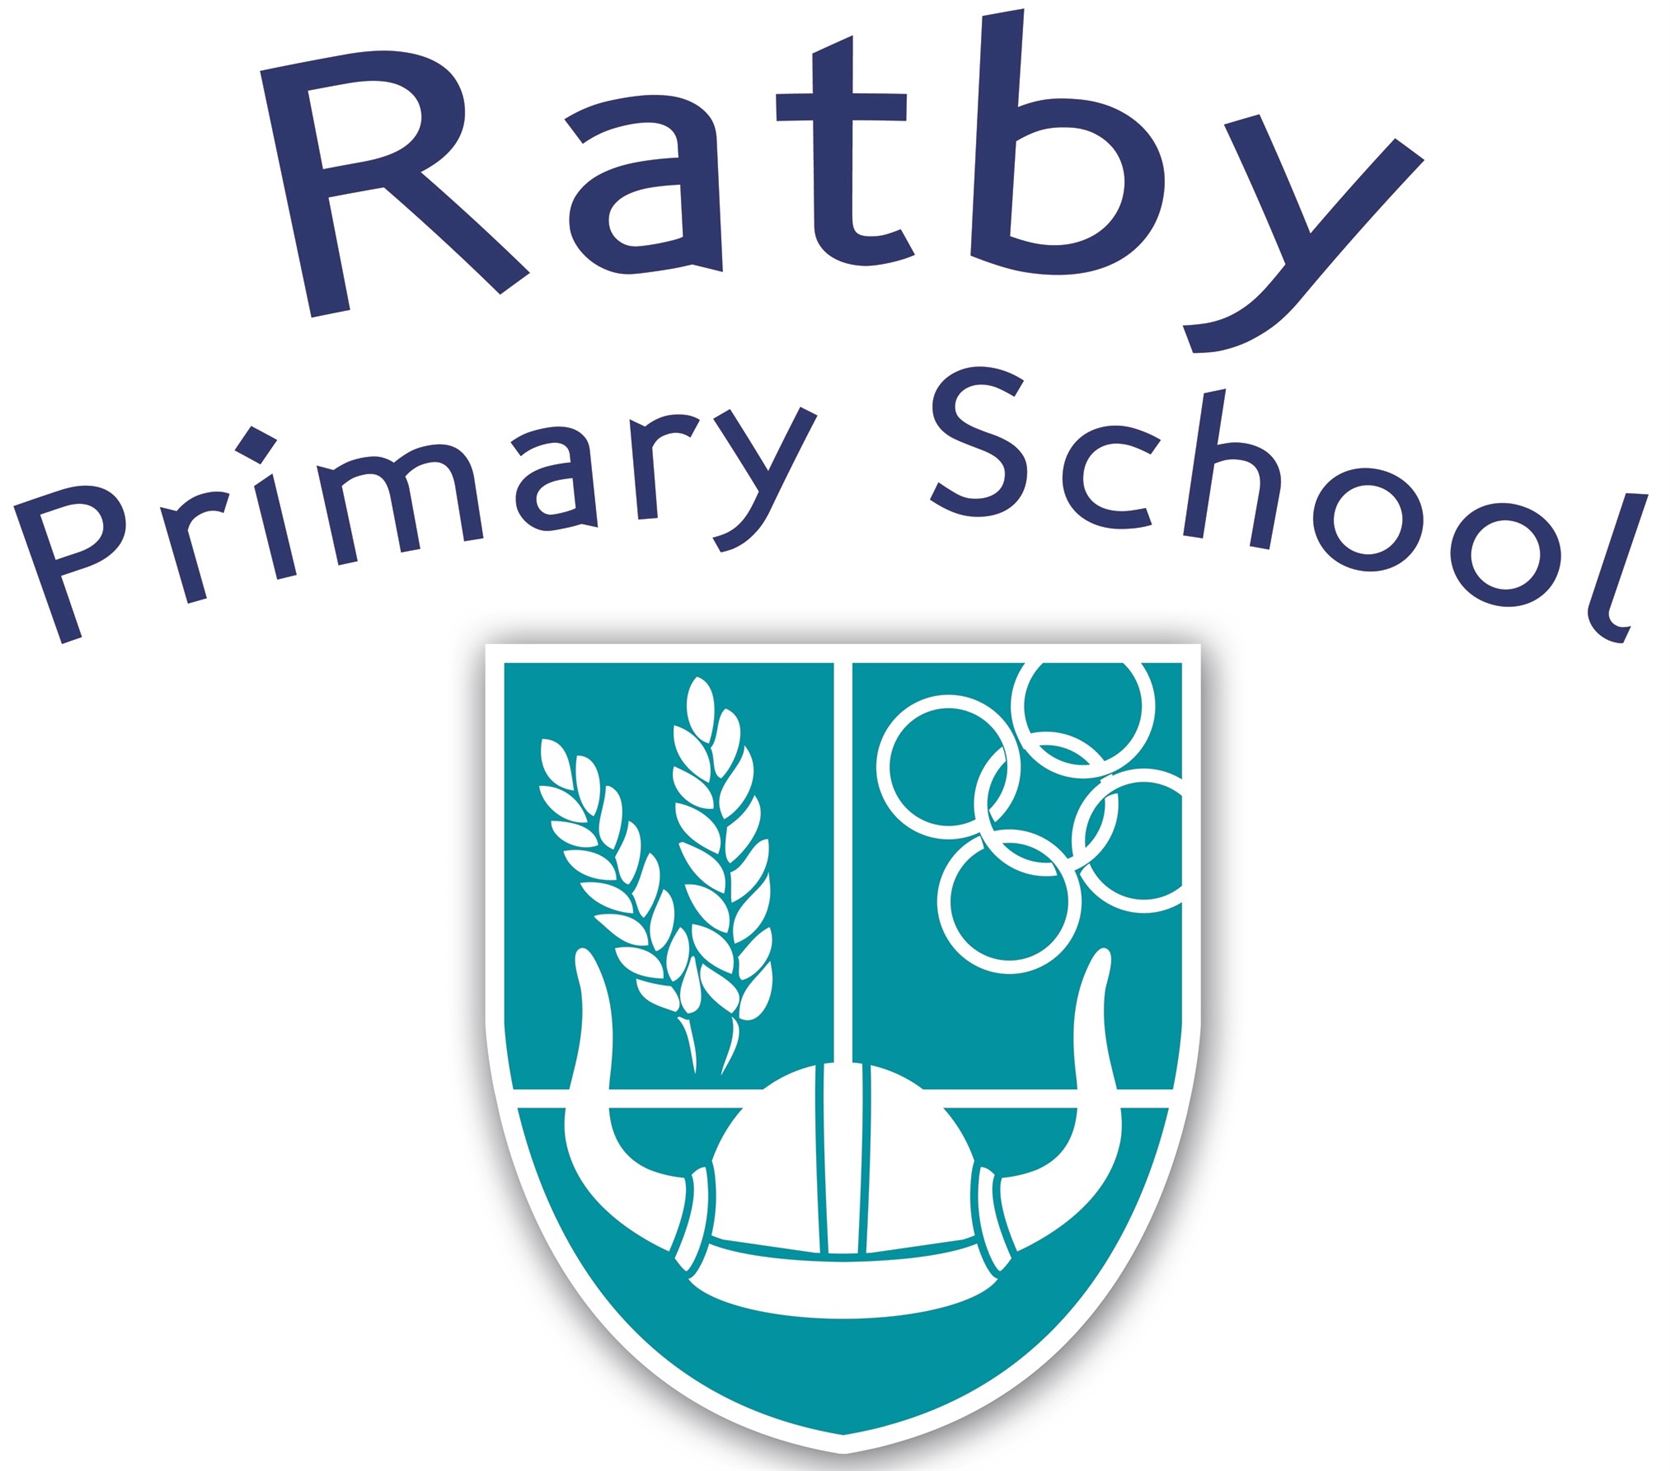 Ratby Primary School